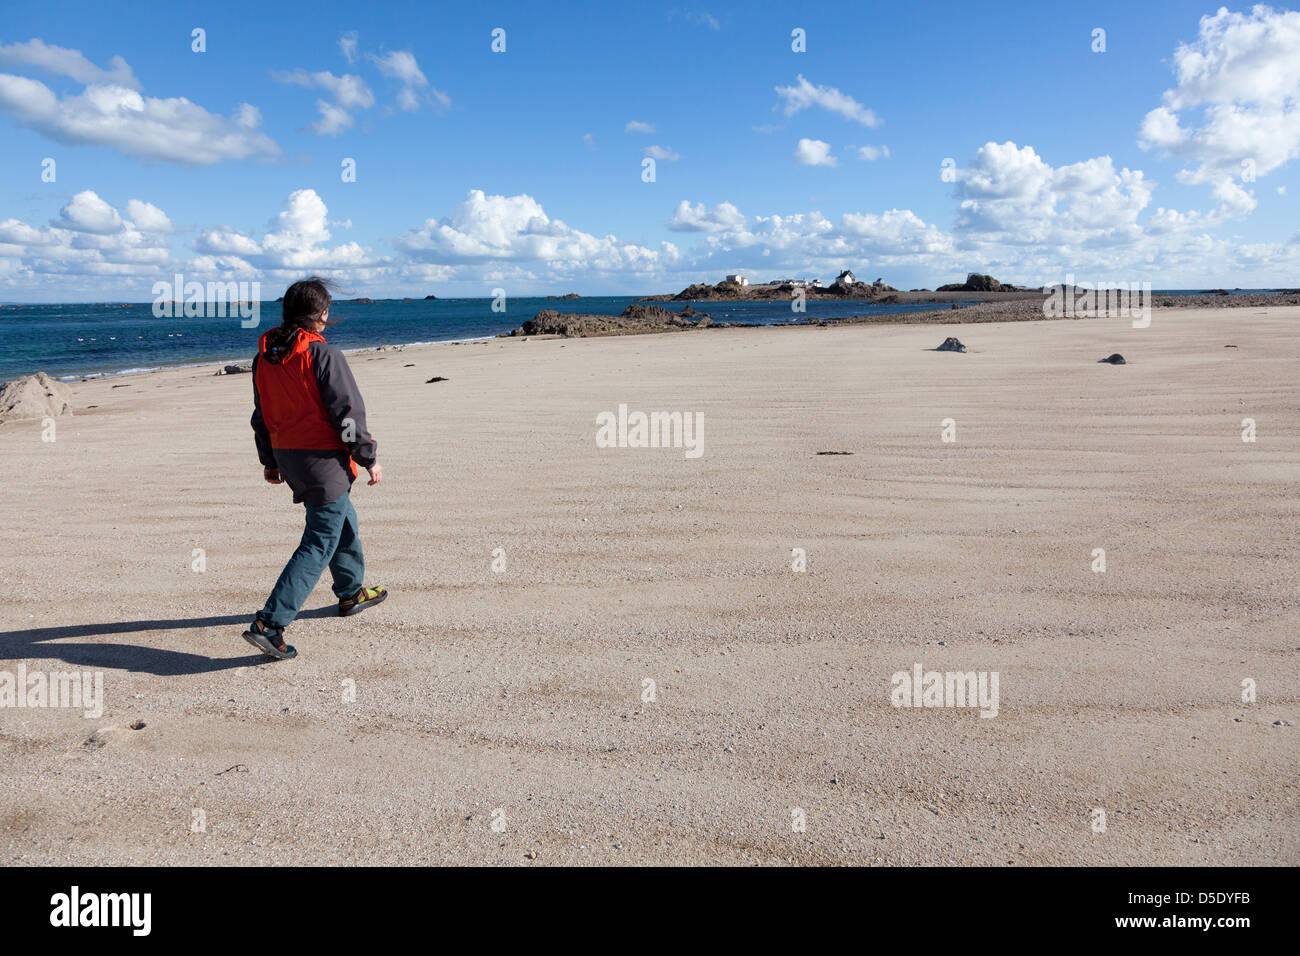 Woman walking on sandy beach, Ecrehous island off Jersey, Channel Islands, UK Stock Photo